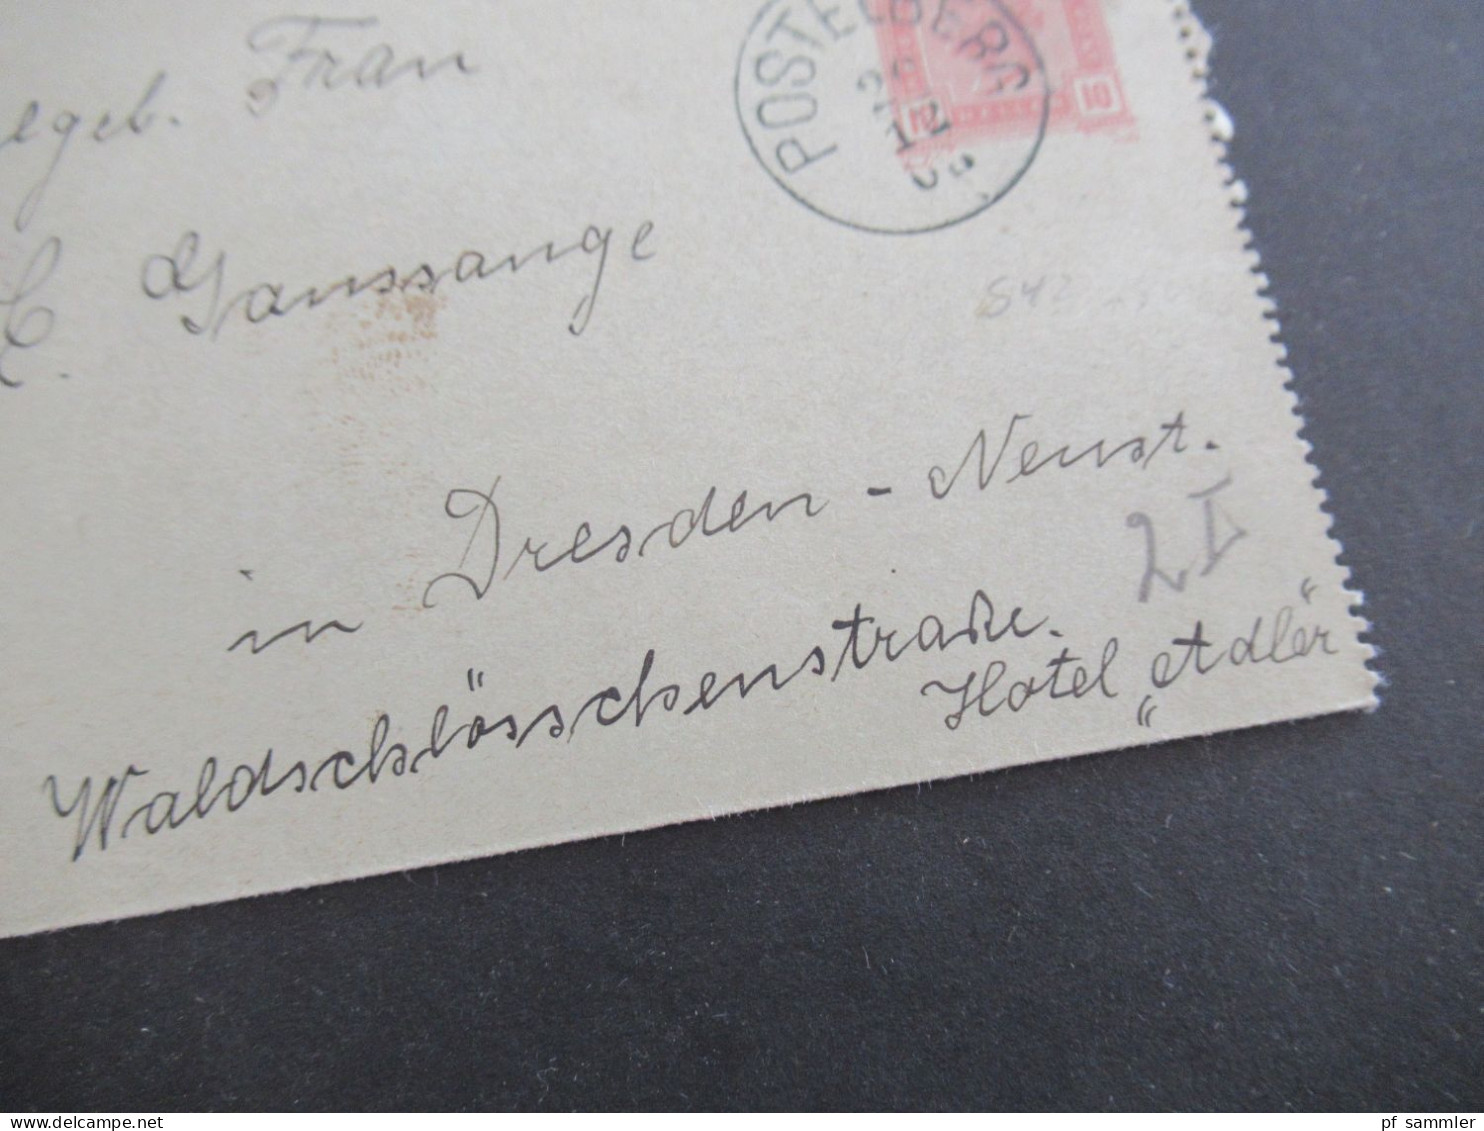 Österreich / Tschechien 1903 Kartenbrief 10 Heller Stempel K1 Postelberg Nach Dresden Hotel Adler Mit Ank. Stempel - Cartes-lettres